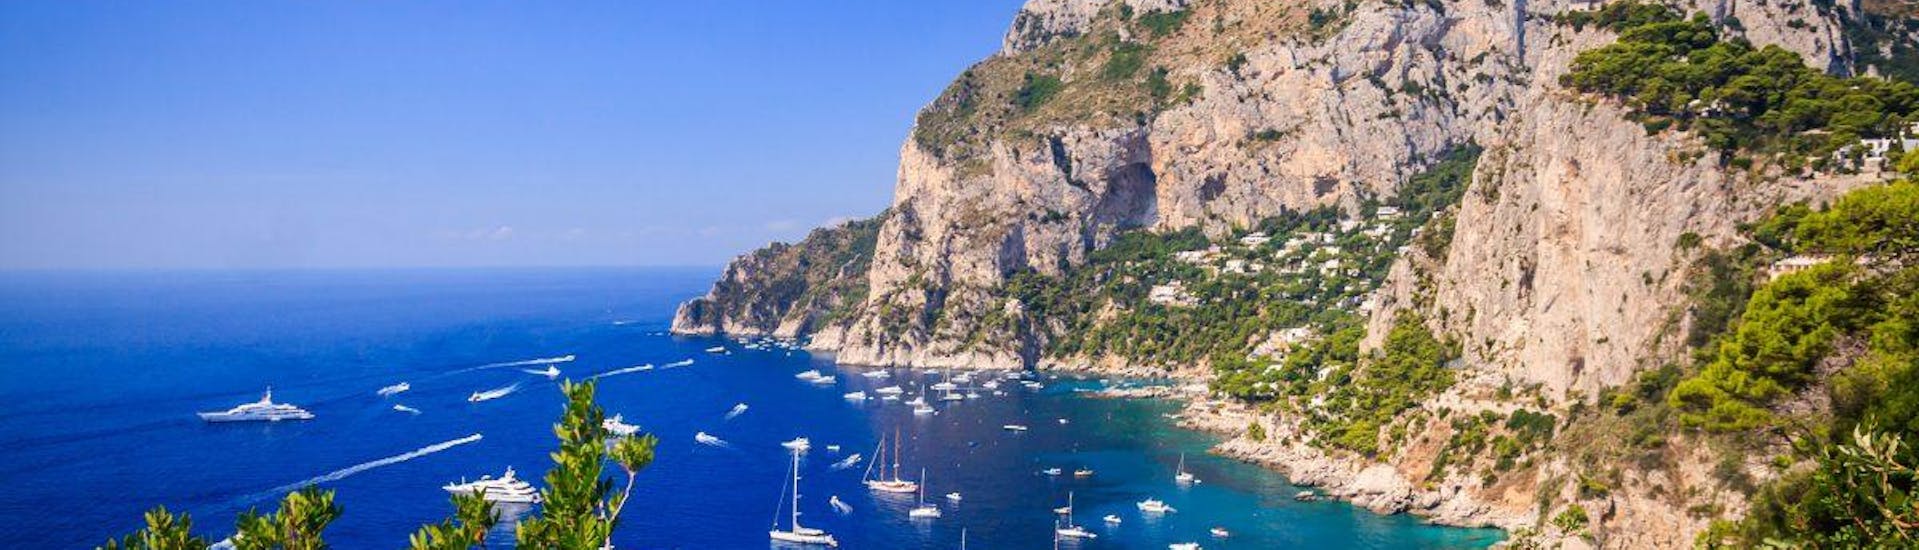 Vous pouvez voir le magnifique port de Capri dans cette excursion en bateau de Torre del Greco et Ercolano à Capri.